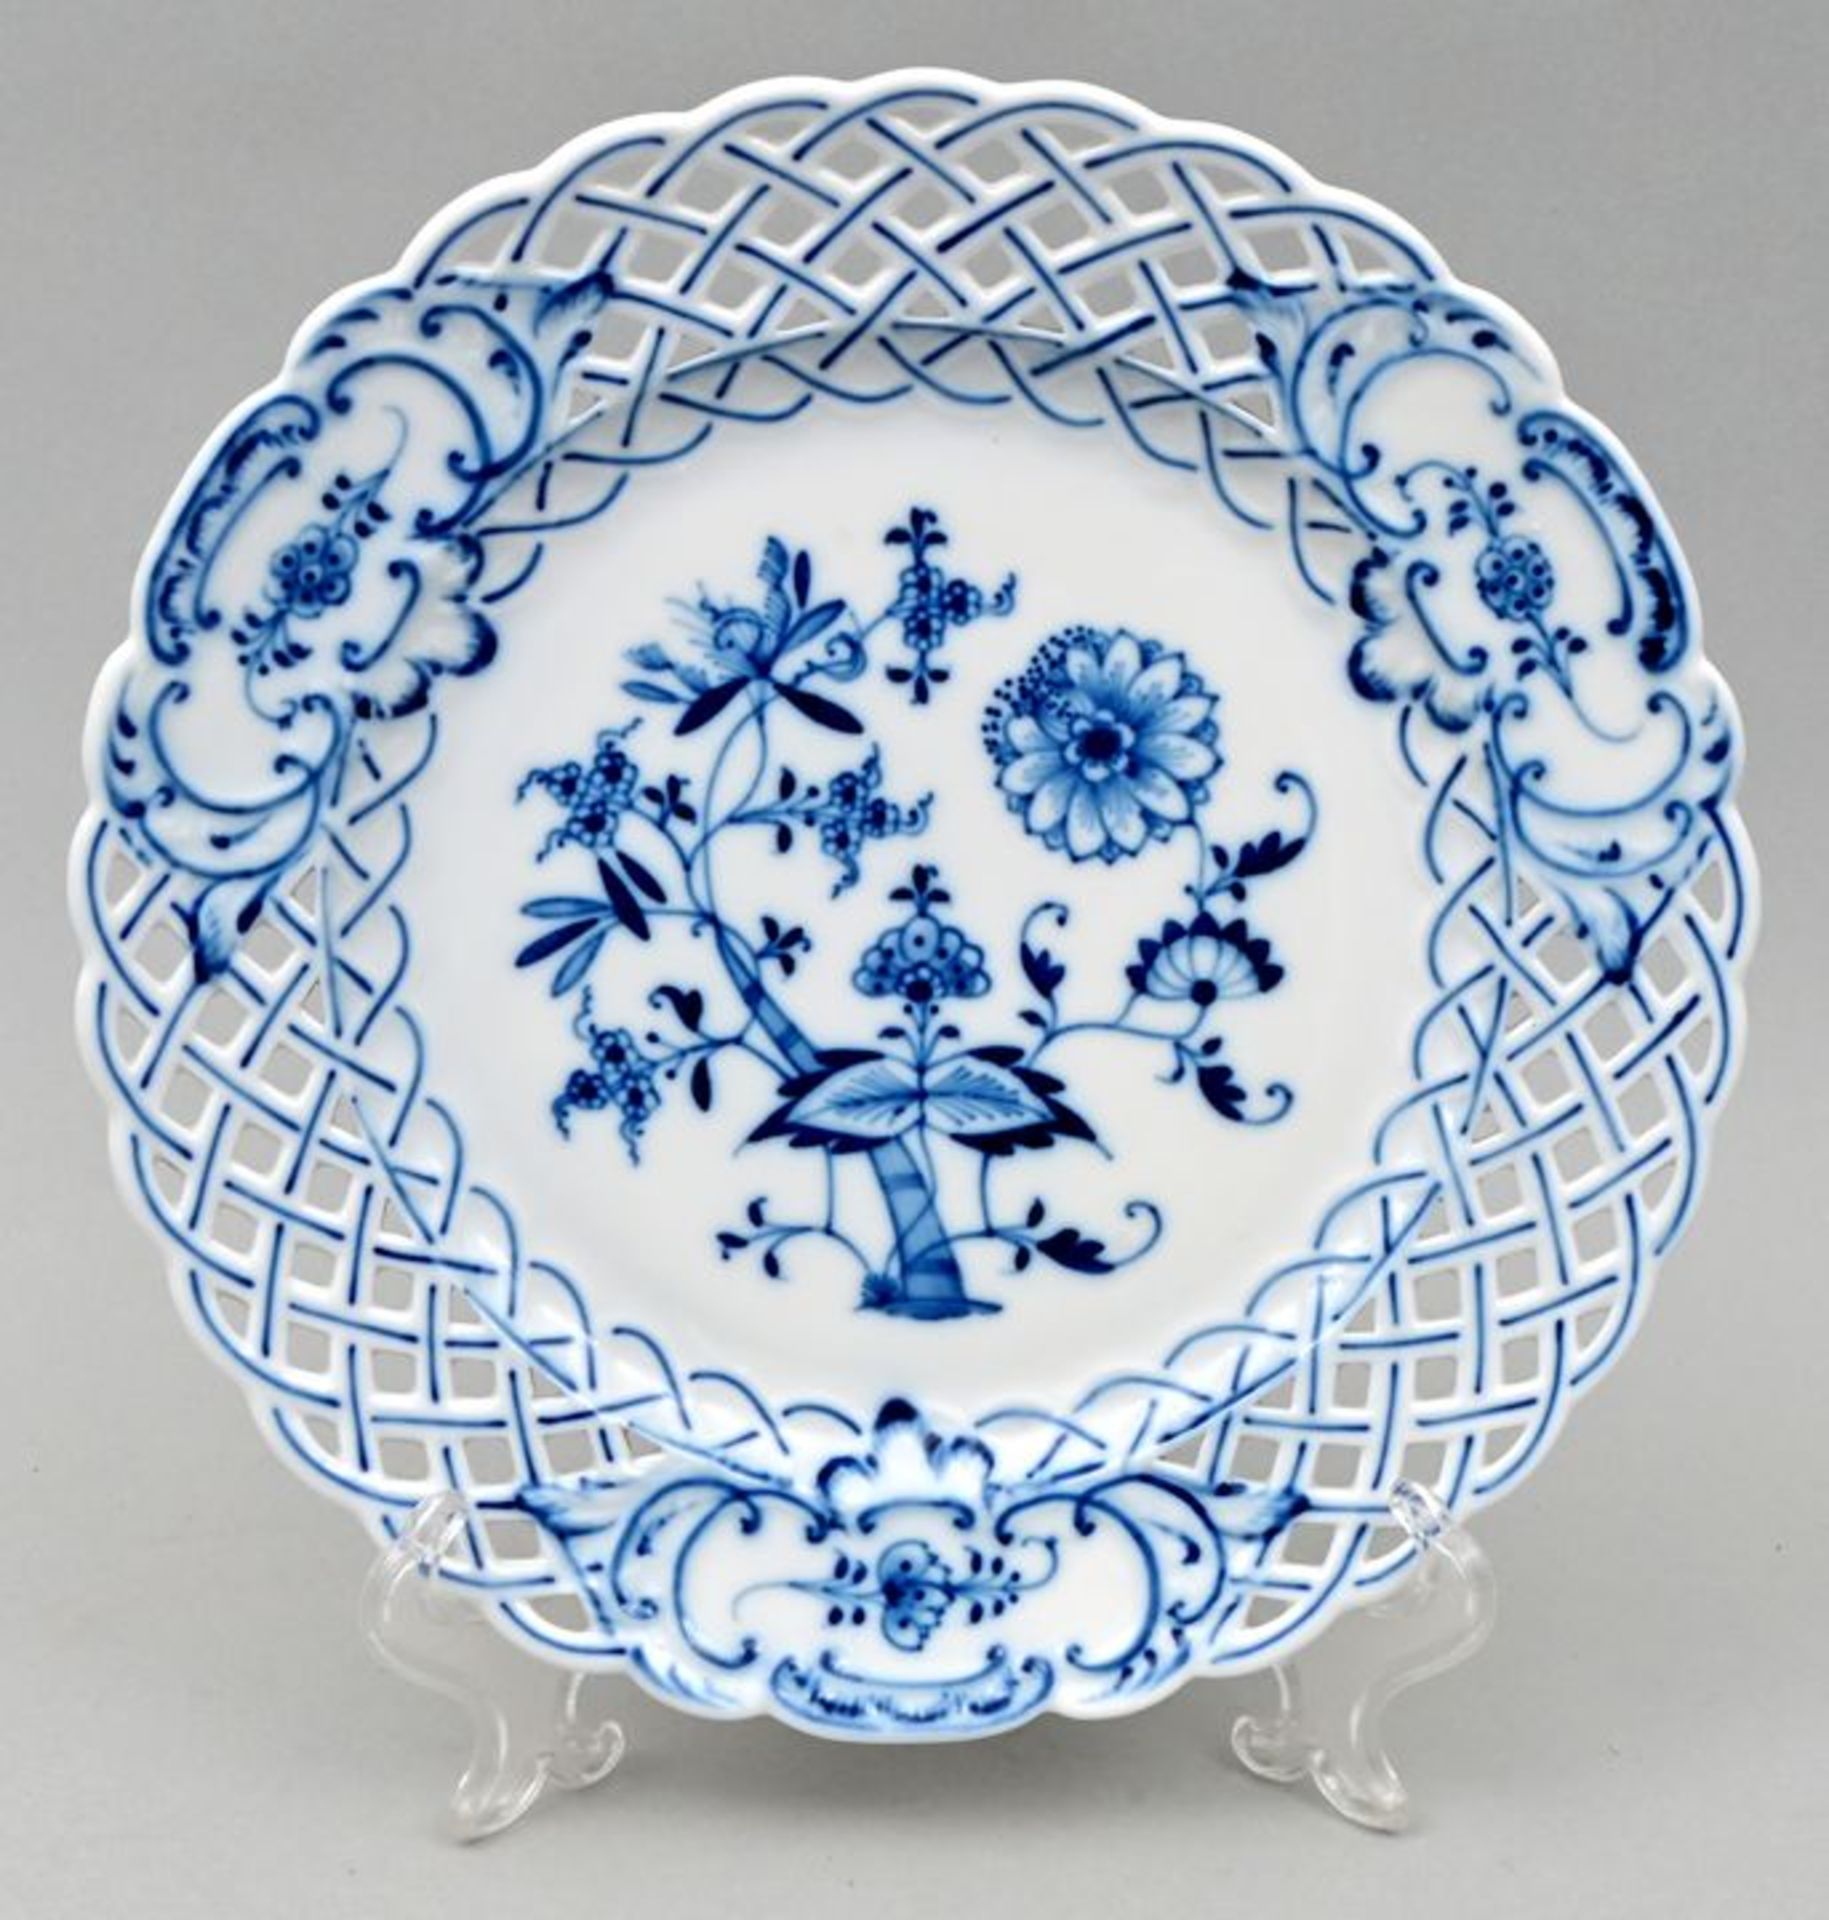 Zwiebelmusterteller/ plate blue onion pattern